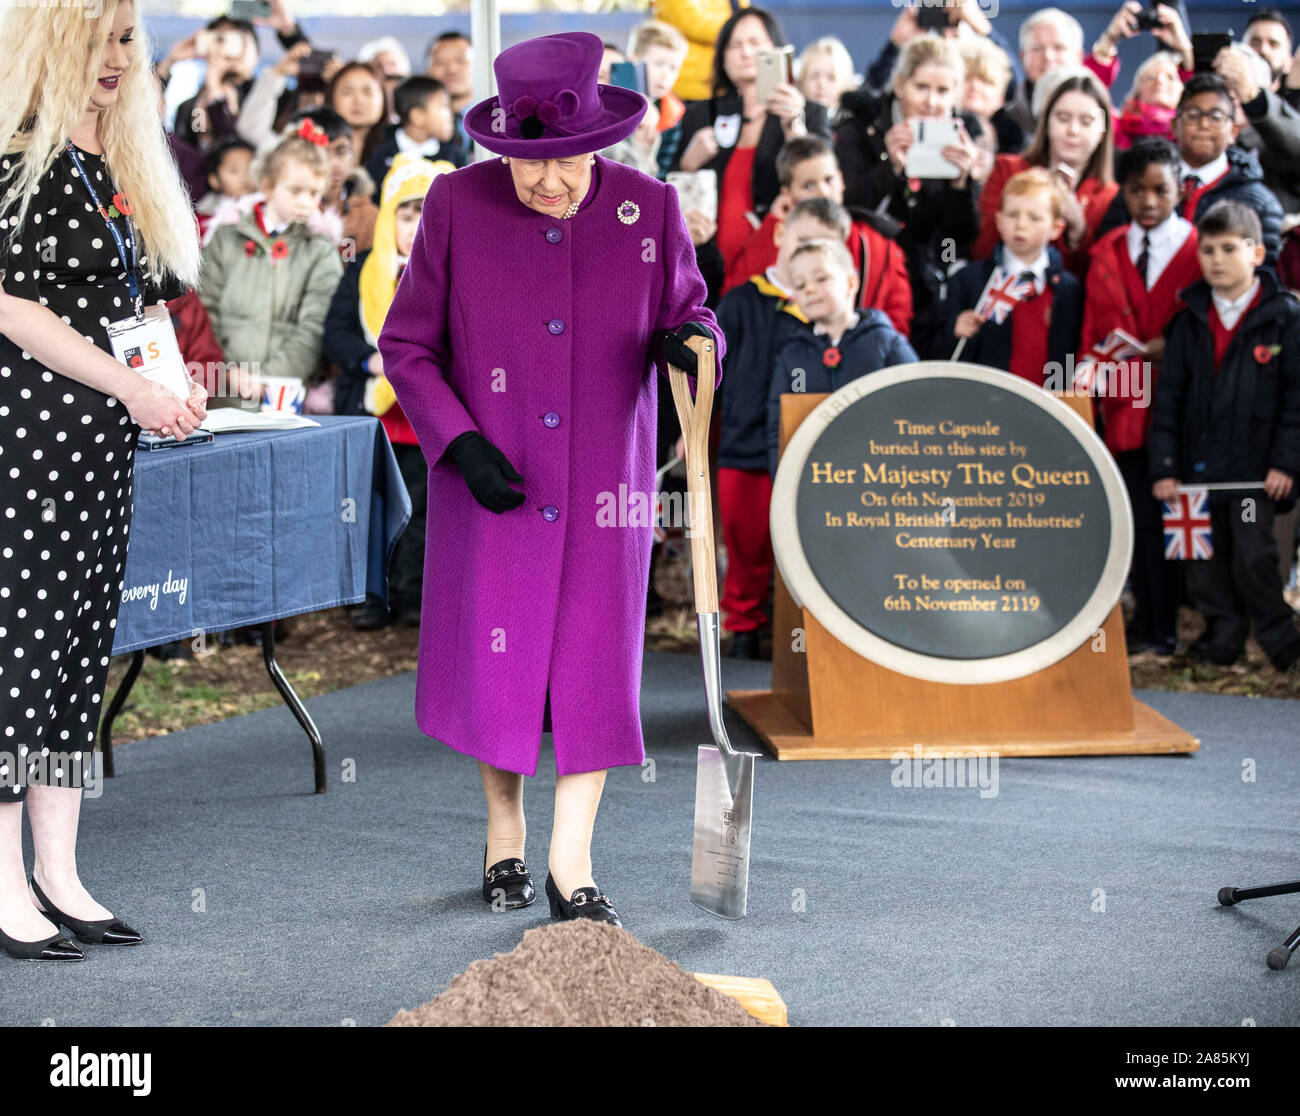 La reine Elizabeth II se prépare à la pelle dans un trou du sol contenant une capsule de temps à ne pas ouvrir jusqu'à 2119 dans le parc du Royal British Legion village Industries à Aylesford, Kent, pour célébrer l'année du centenaire de l'organisme de bienfaisance. Banque D'Images